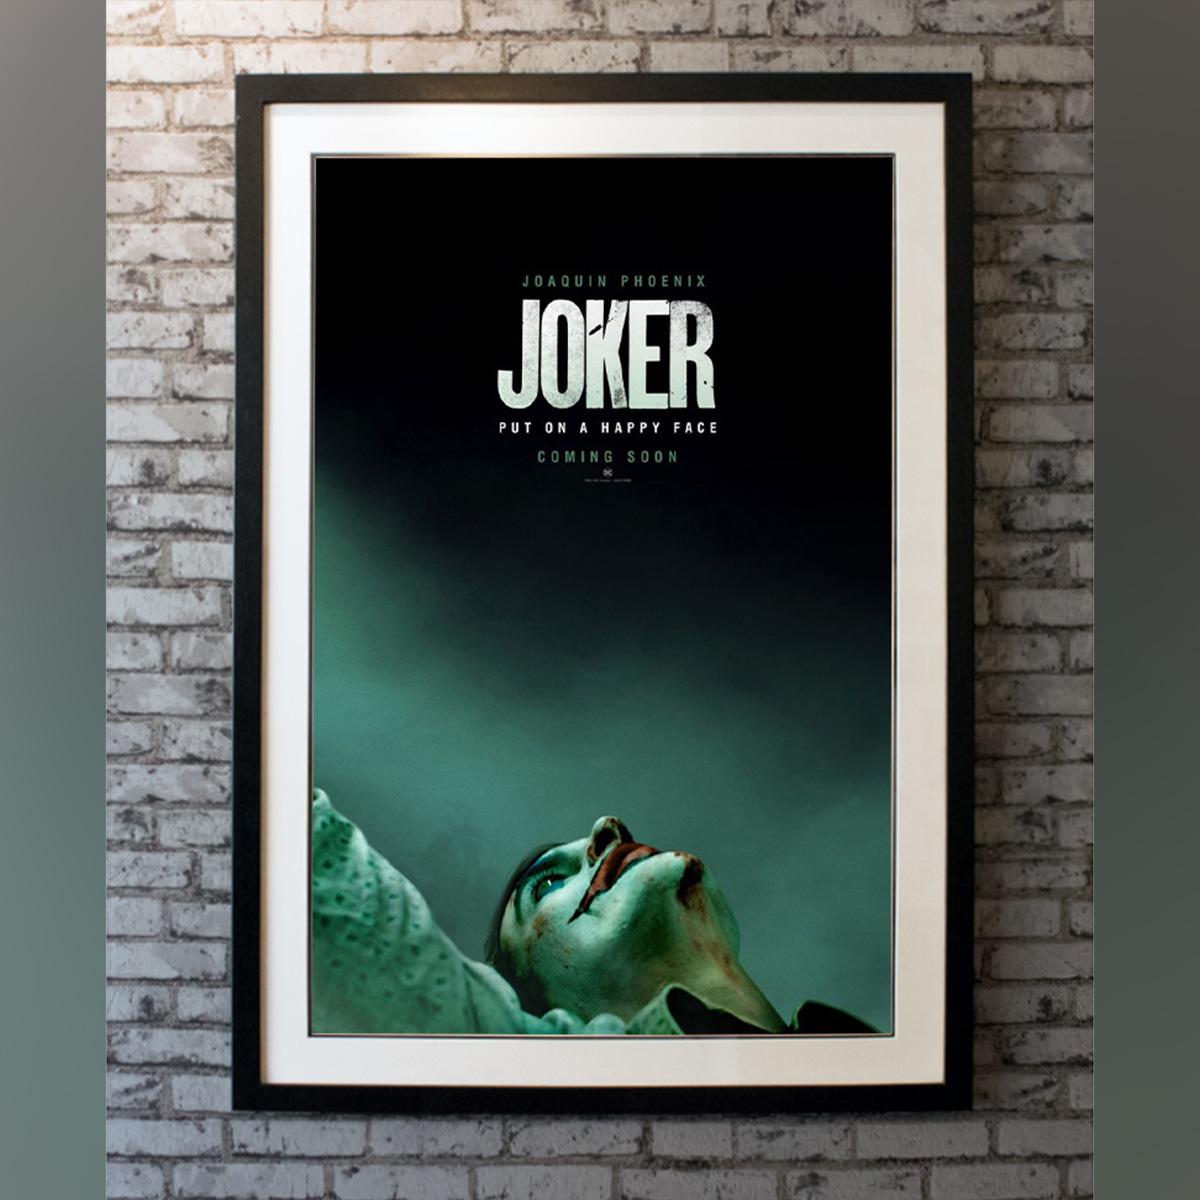 Joker, 2019 Poster For Sale at 1stDibs | joker poster 2019, joker ...